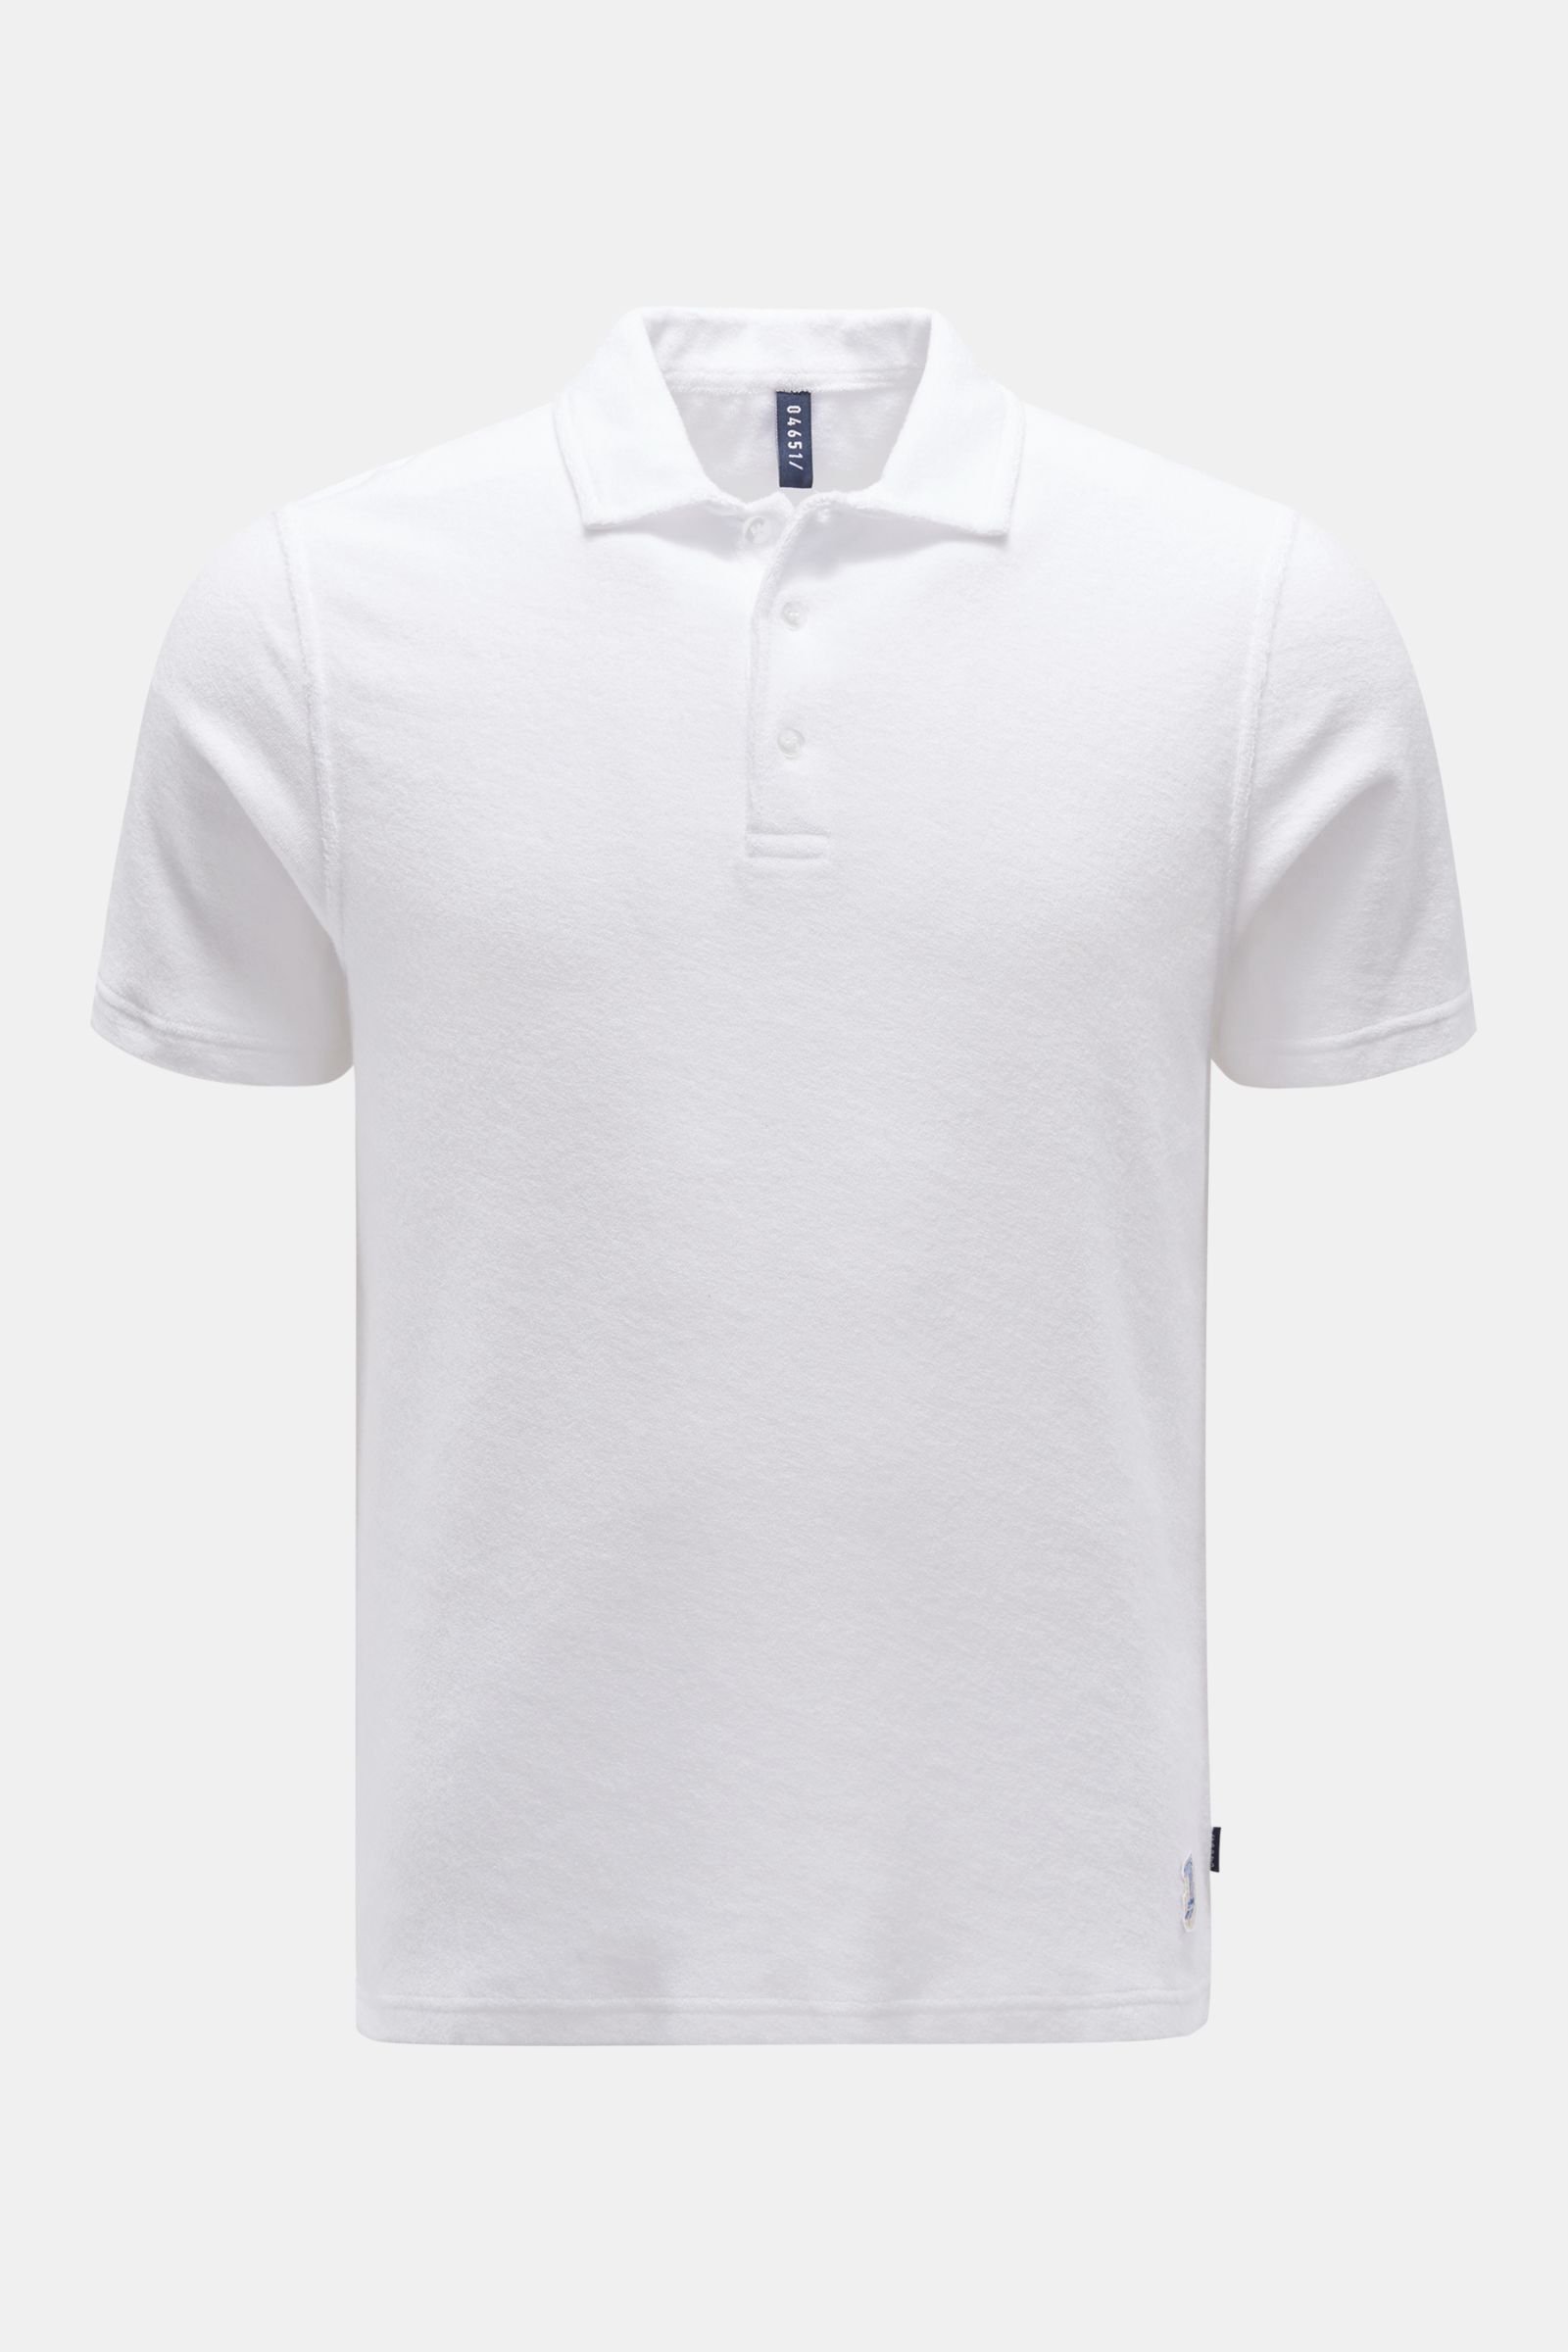 Terry polo shirt white